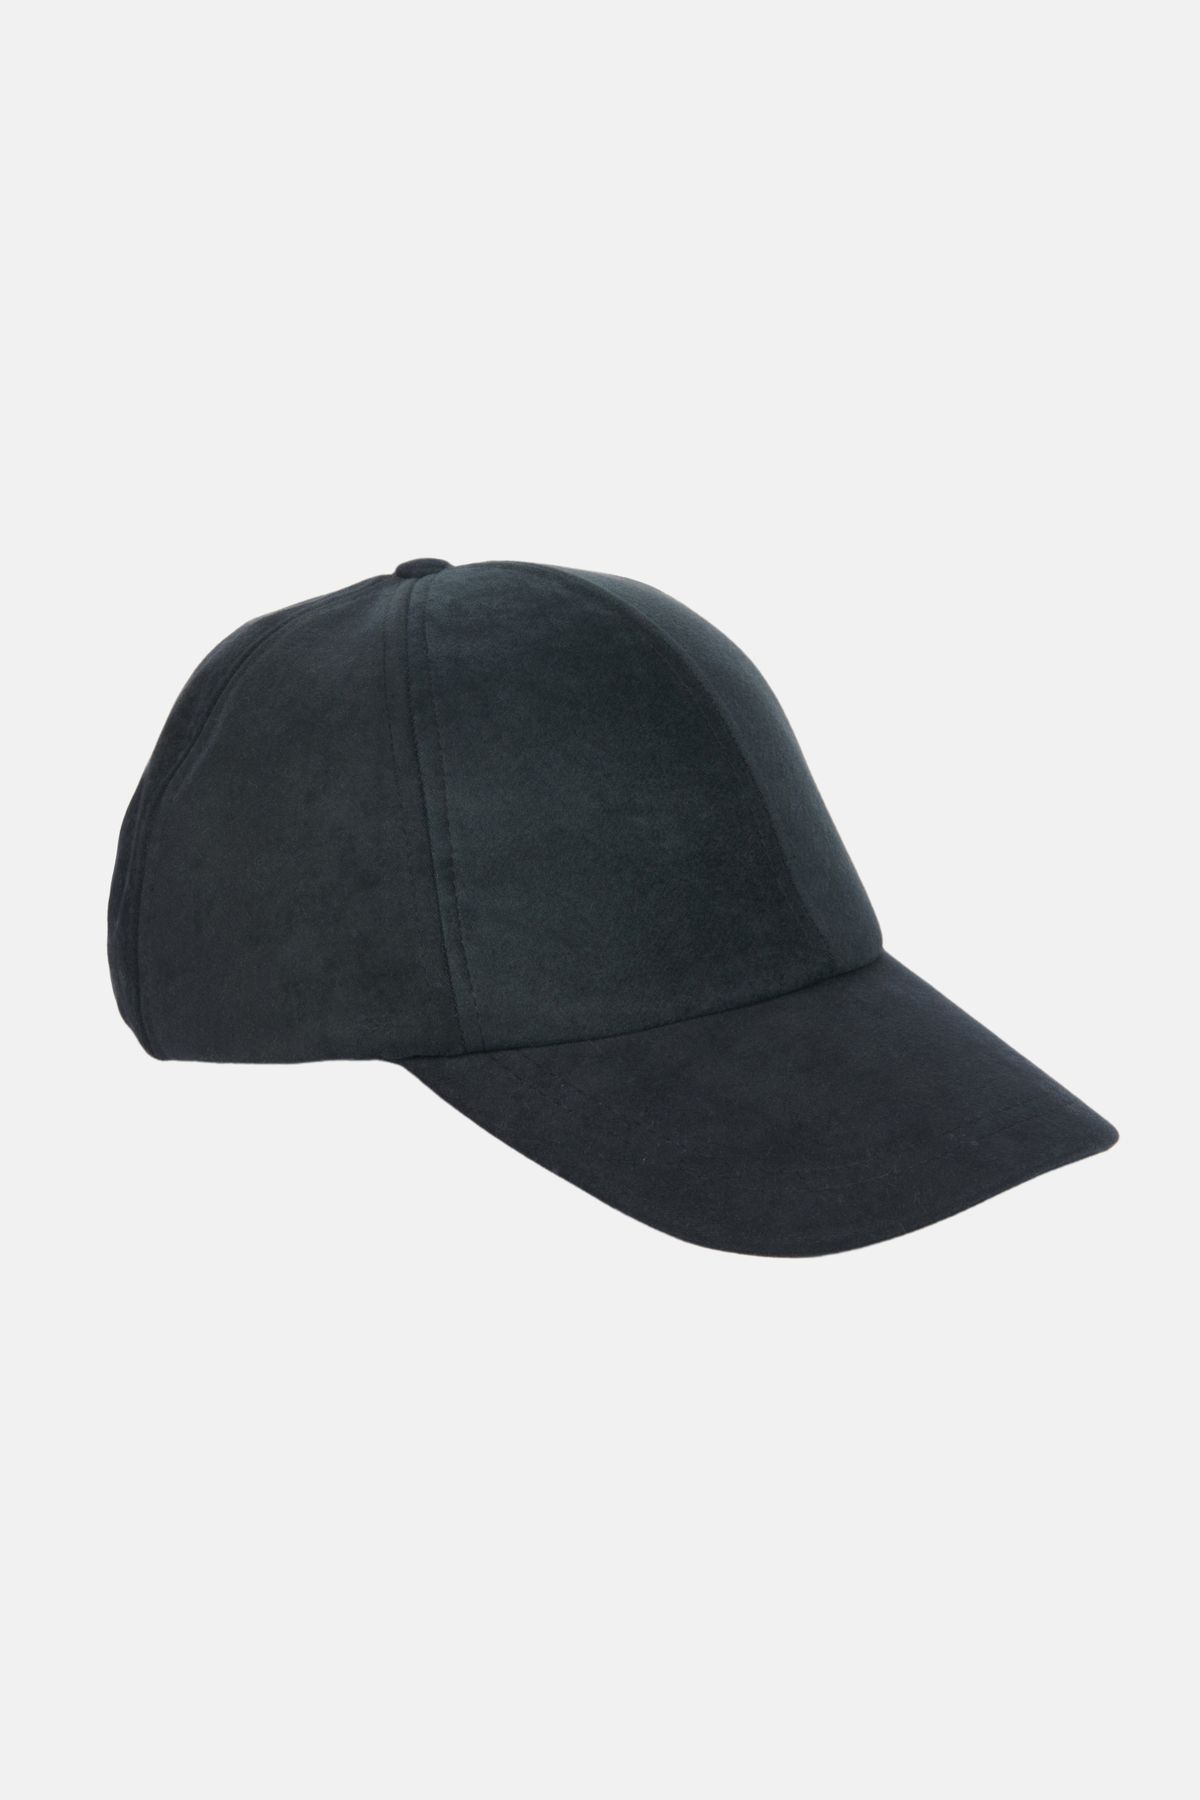 Avva Erkek Siyah Süet Görünümlü Kepli Spor Şapka A32y9204